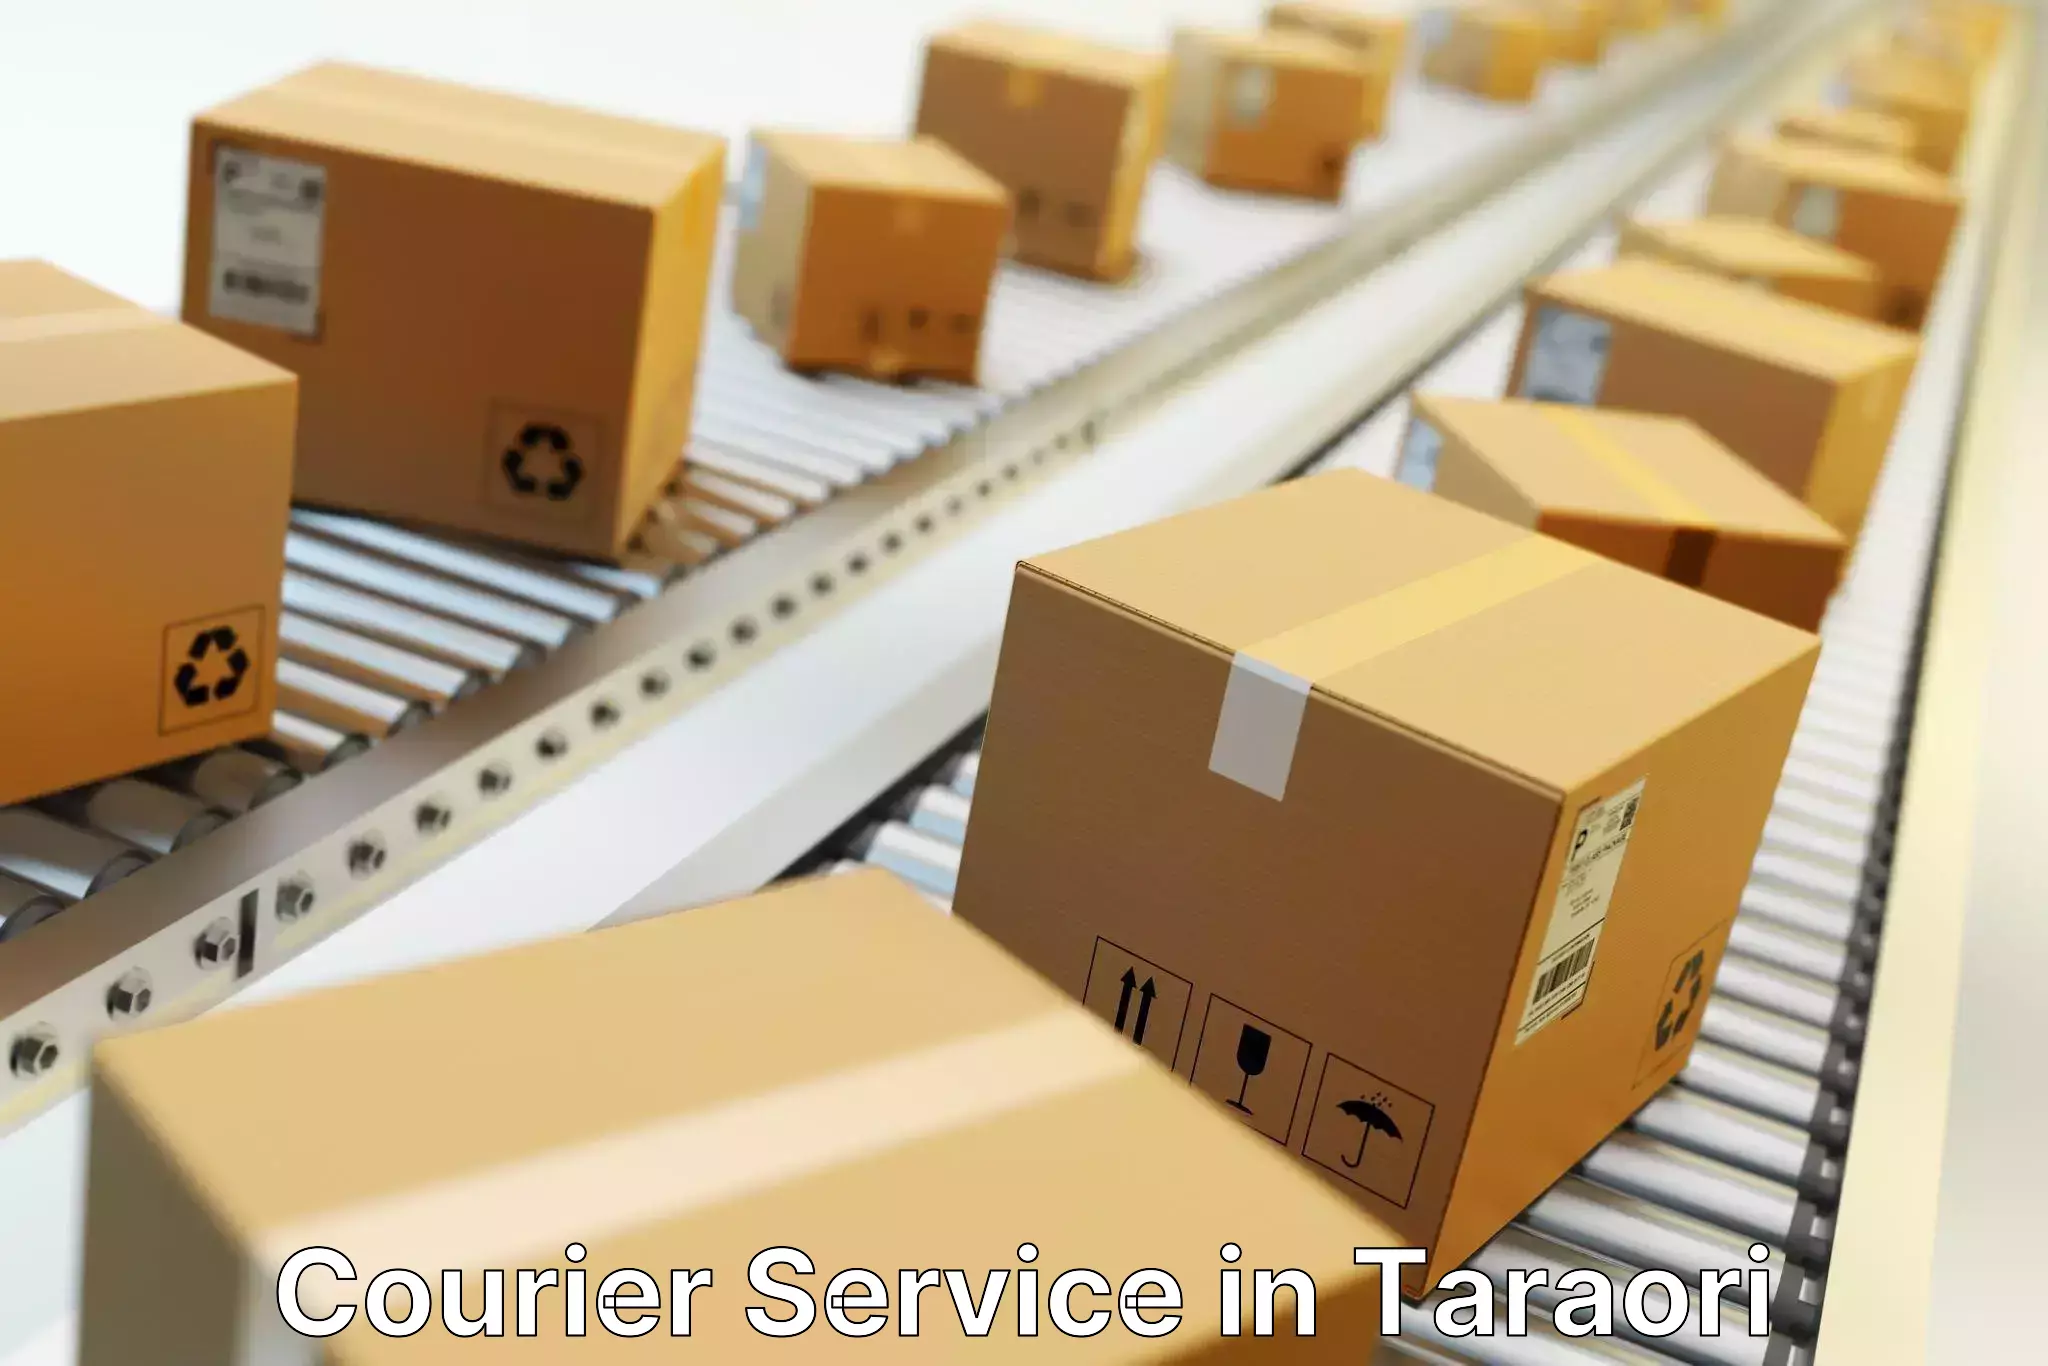 Scheduled delivery in Taraori